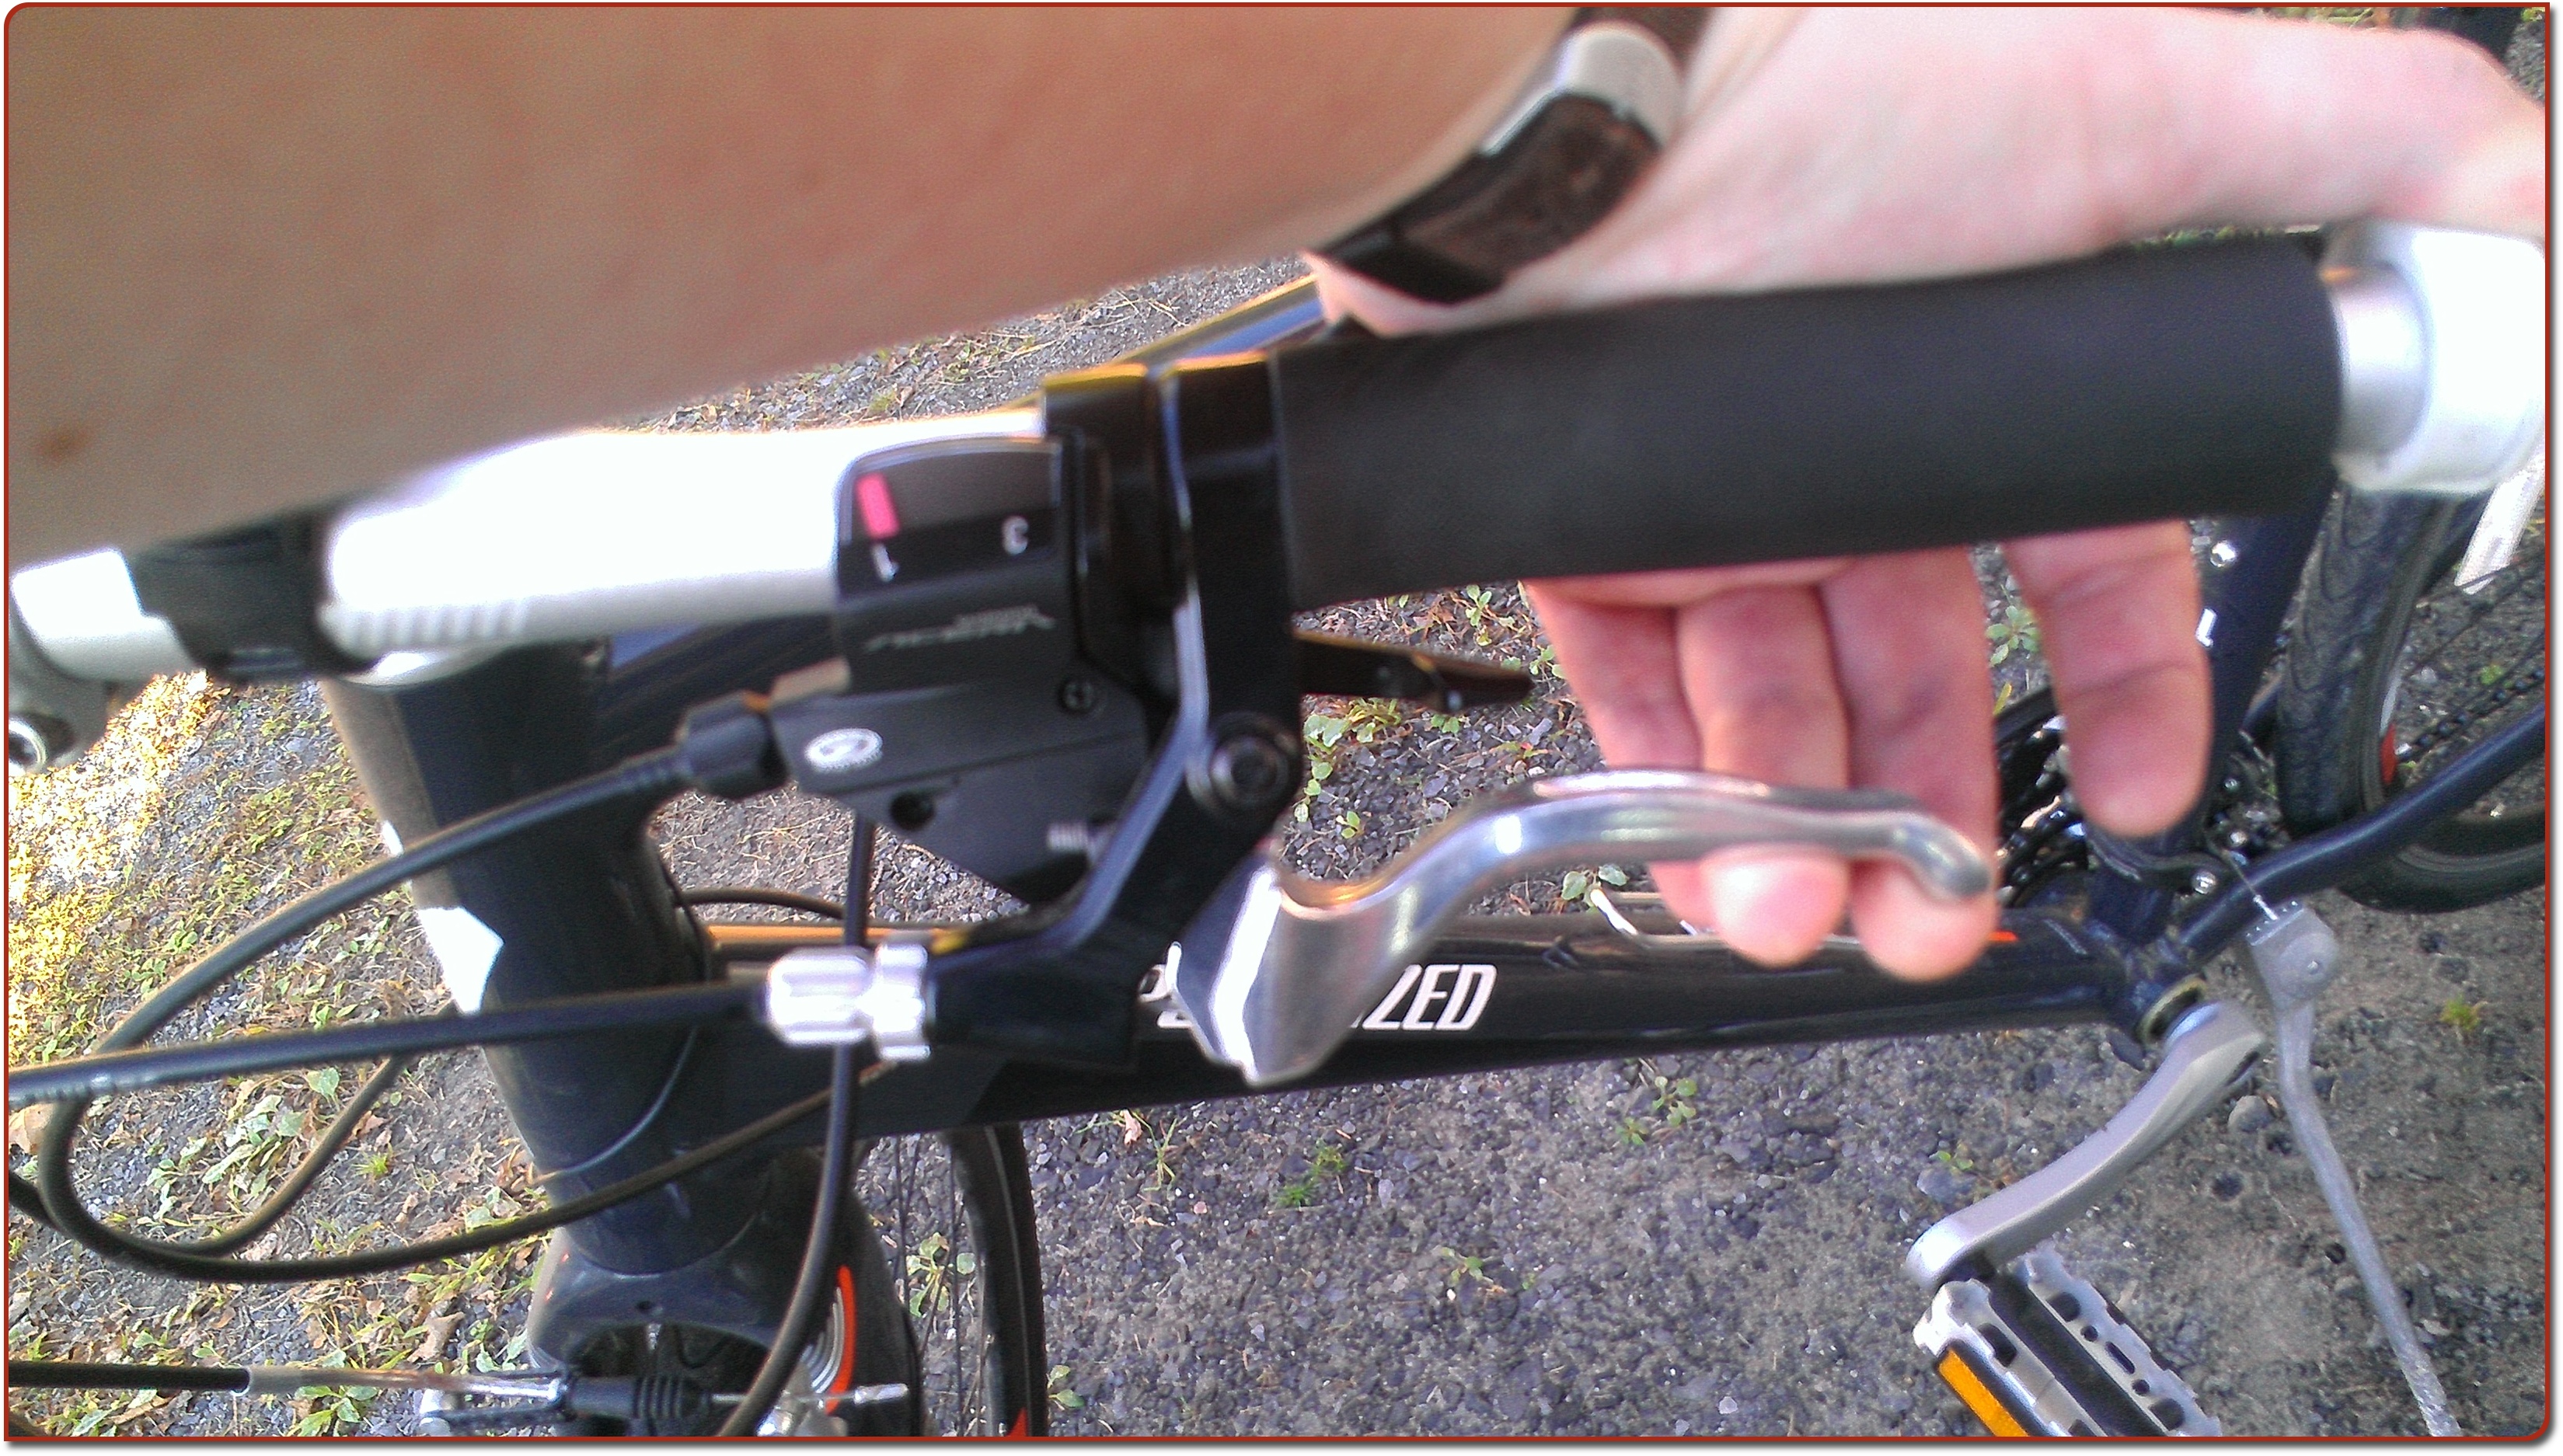 adjusting front brakes on bike